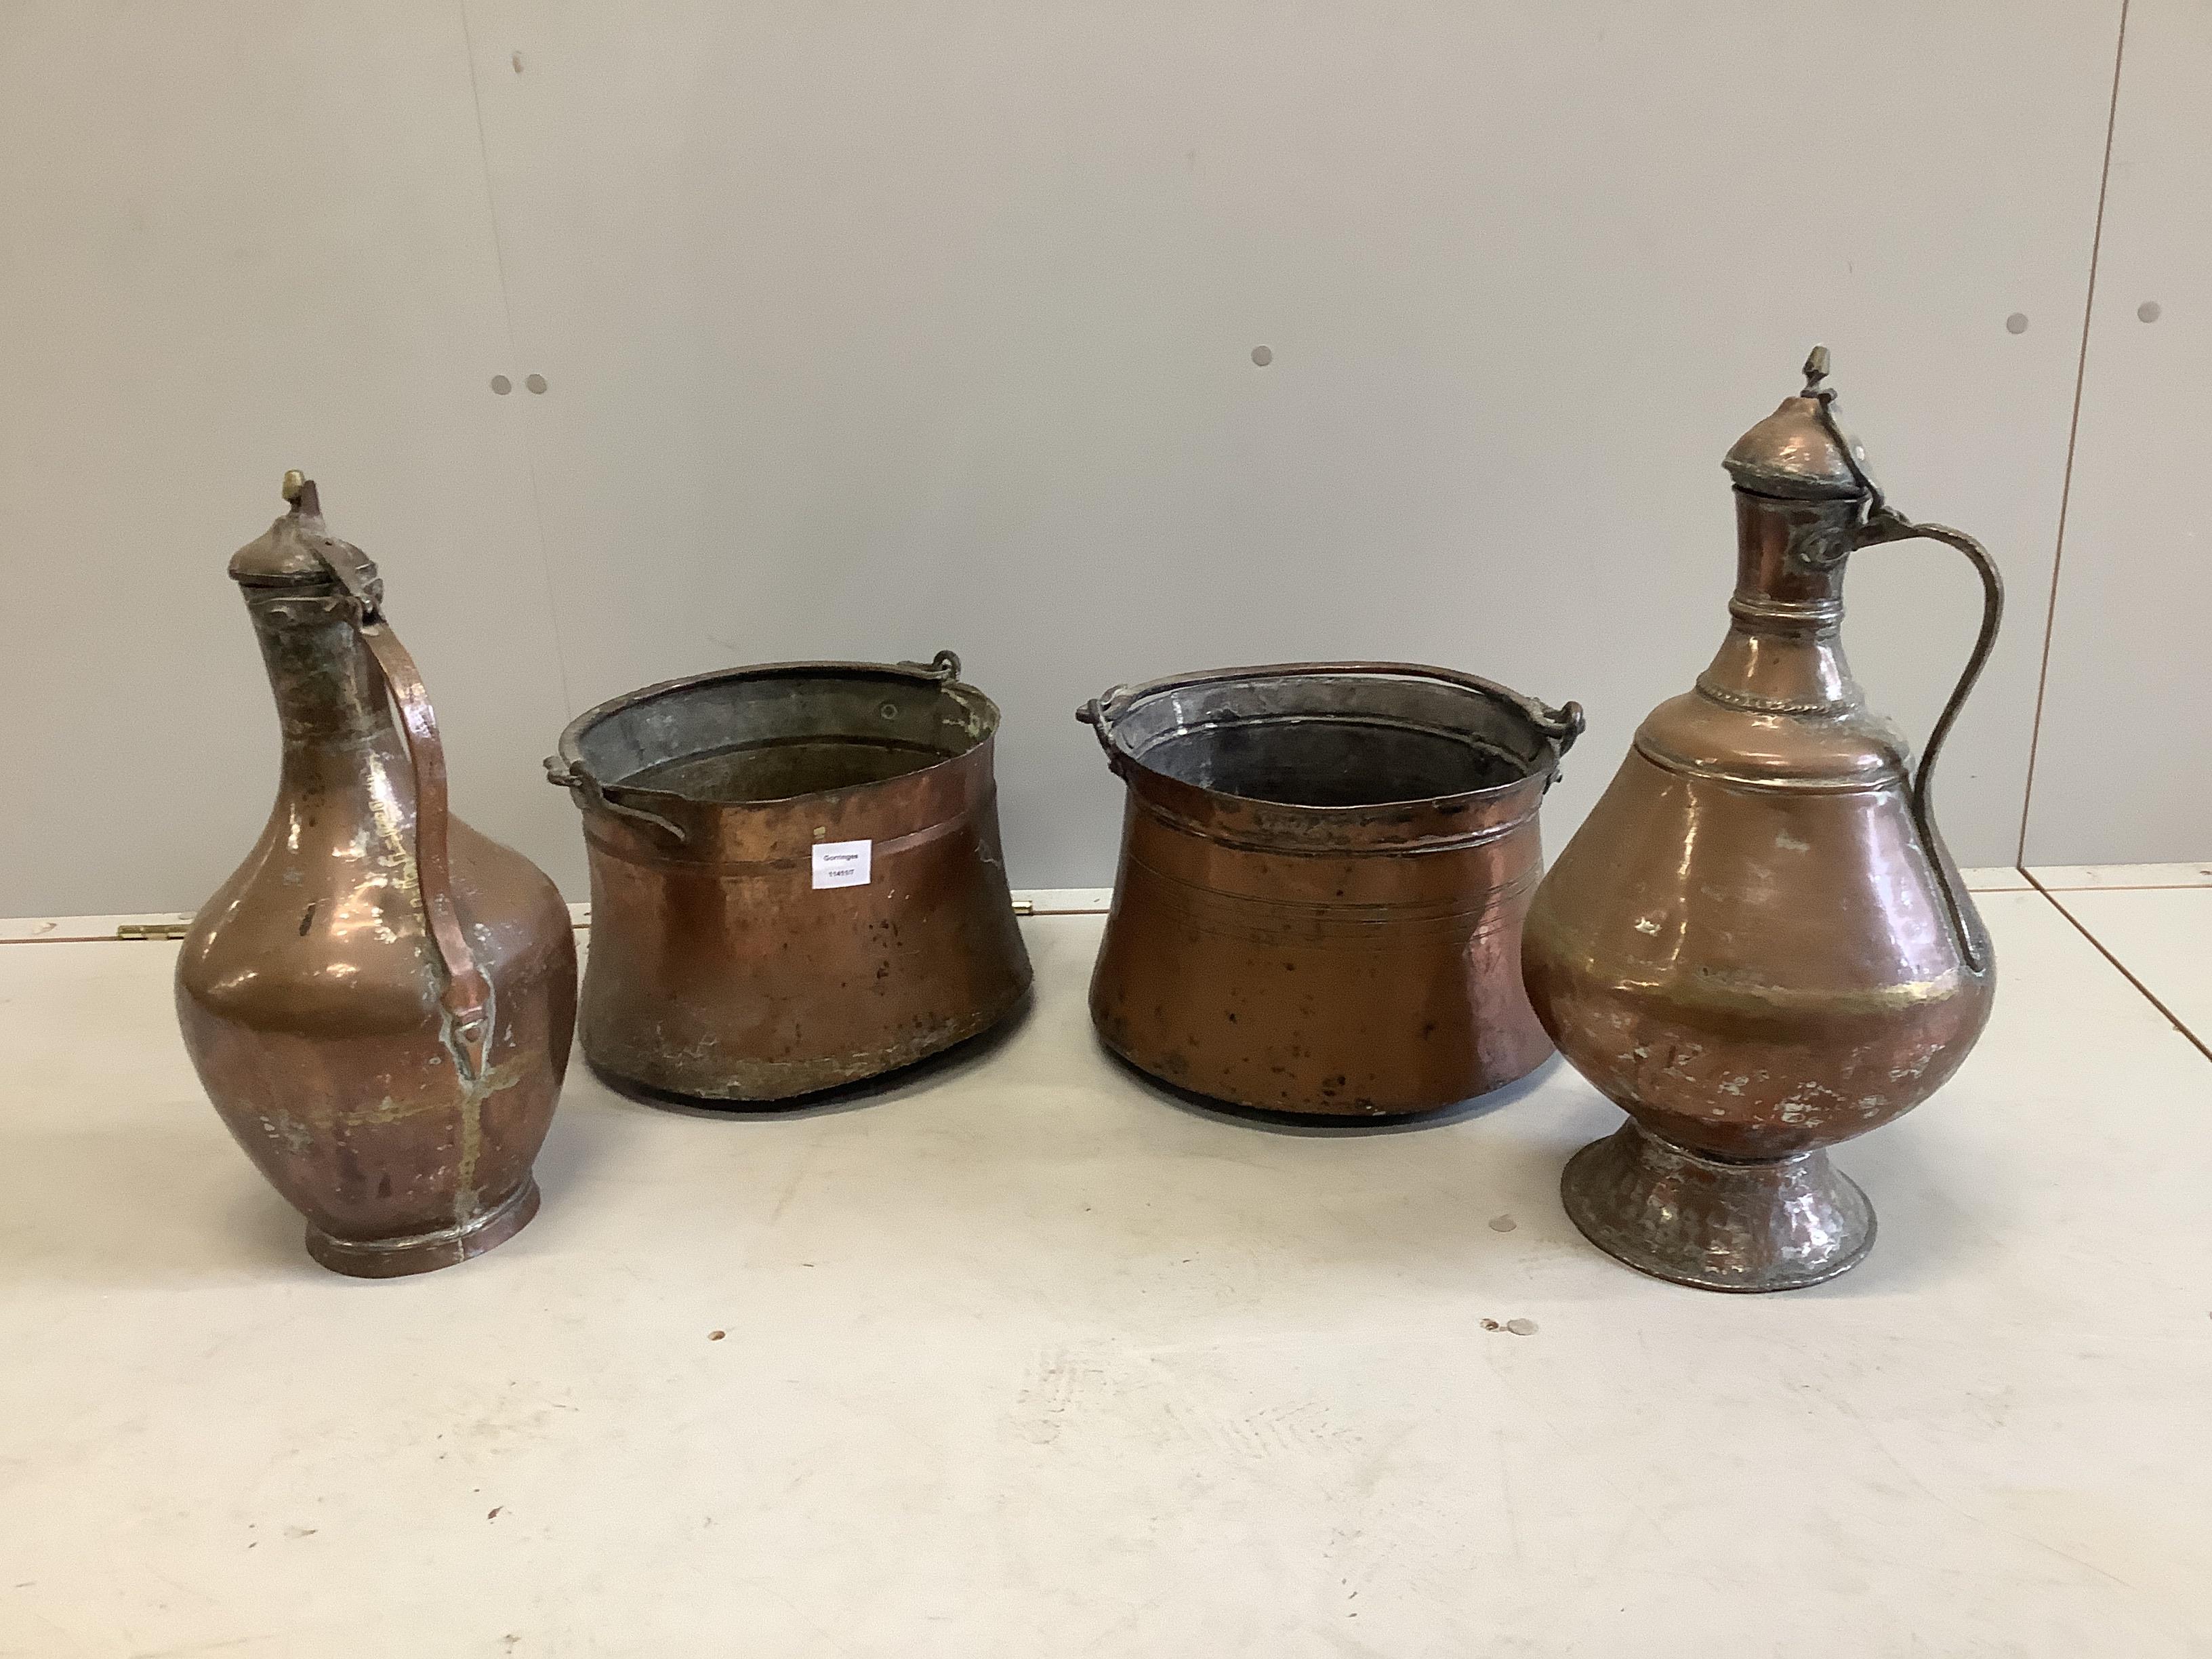 Four copper pots